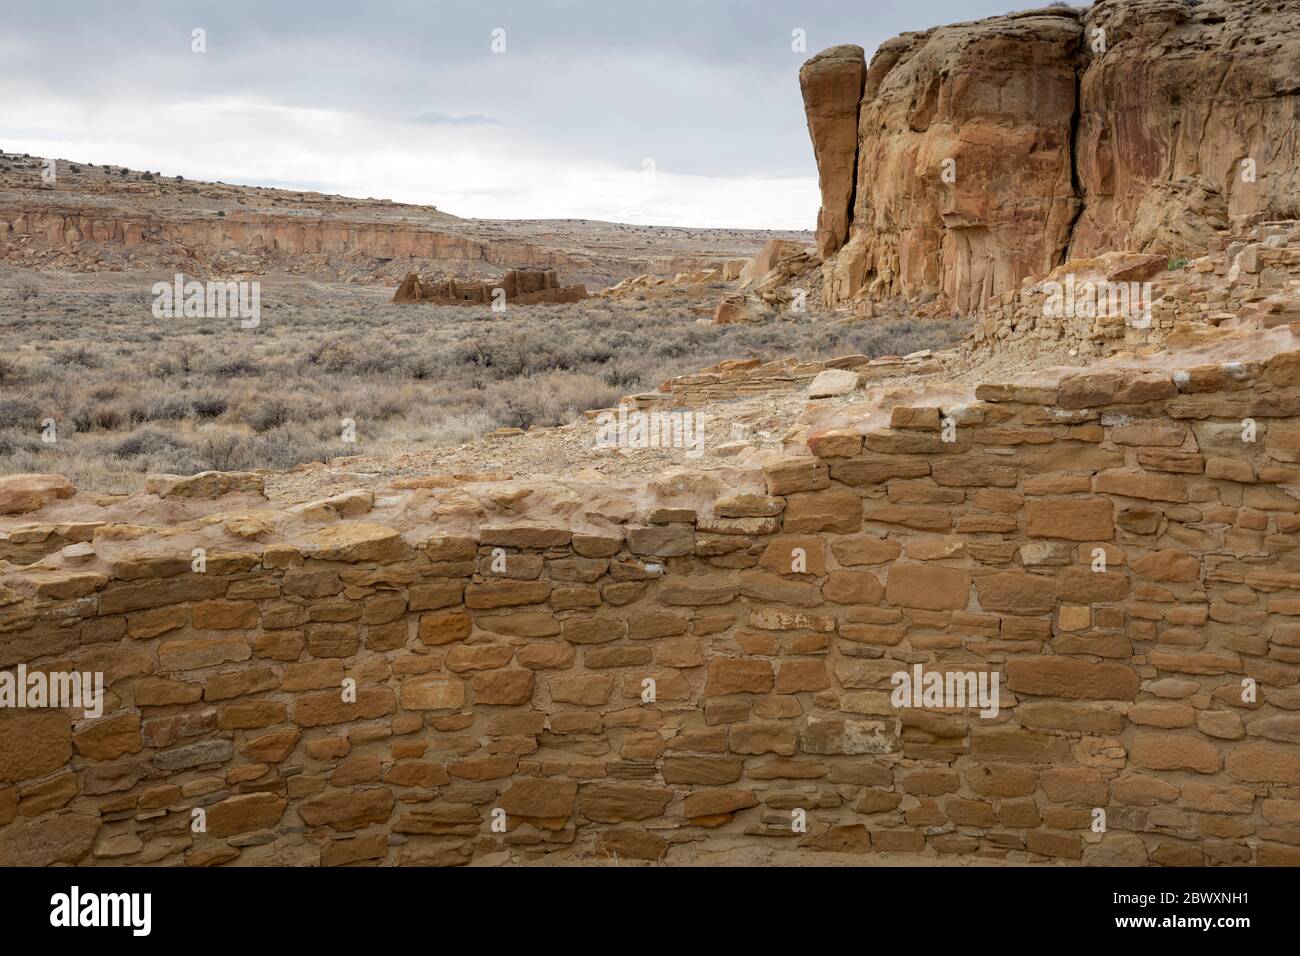 NM00438-00...NUOVO MESSICO - Vista di Pueblo Bonito dalla vicina Chetro Ketl, conservata nel Parco Nazionale Ispitorico della Cultura Chaco, un Sito Patrimonio Mondiale dell'Umanita'. Foto Stock